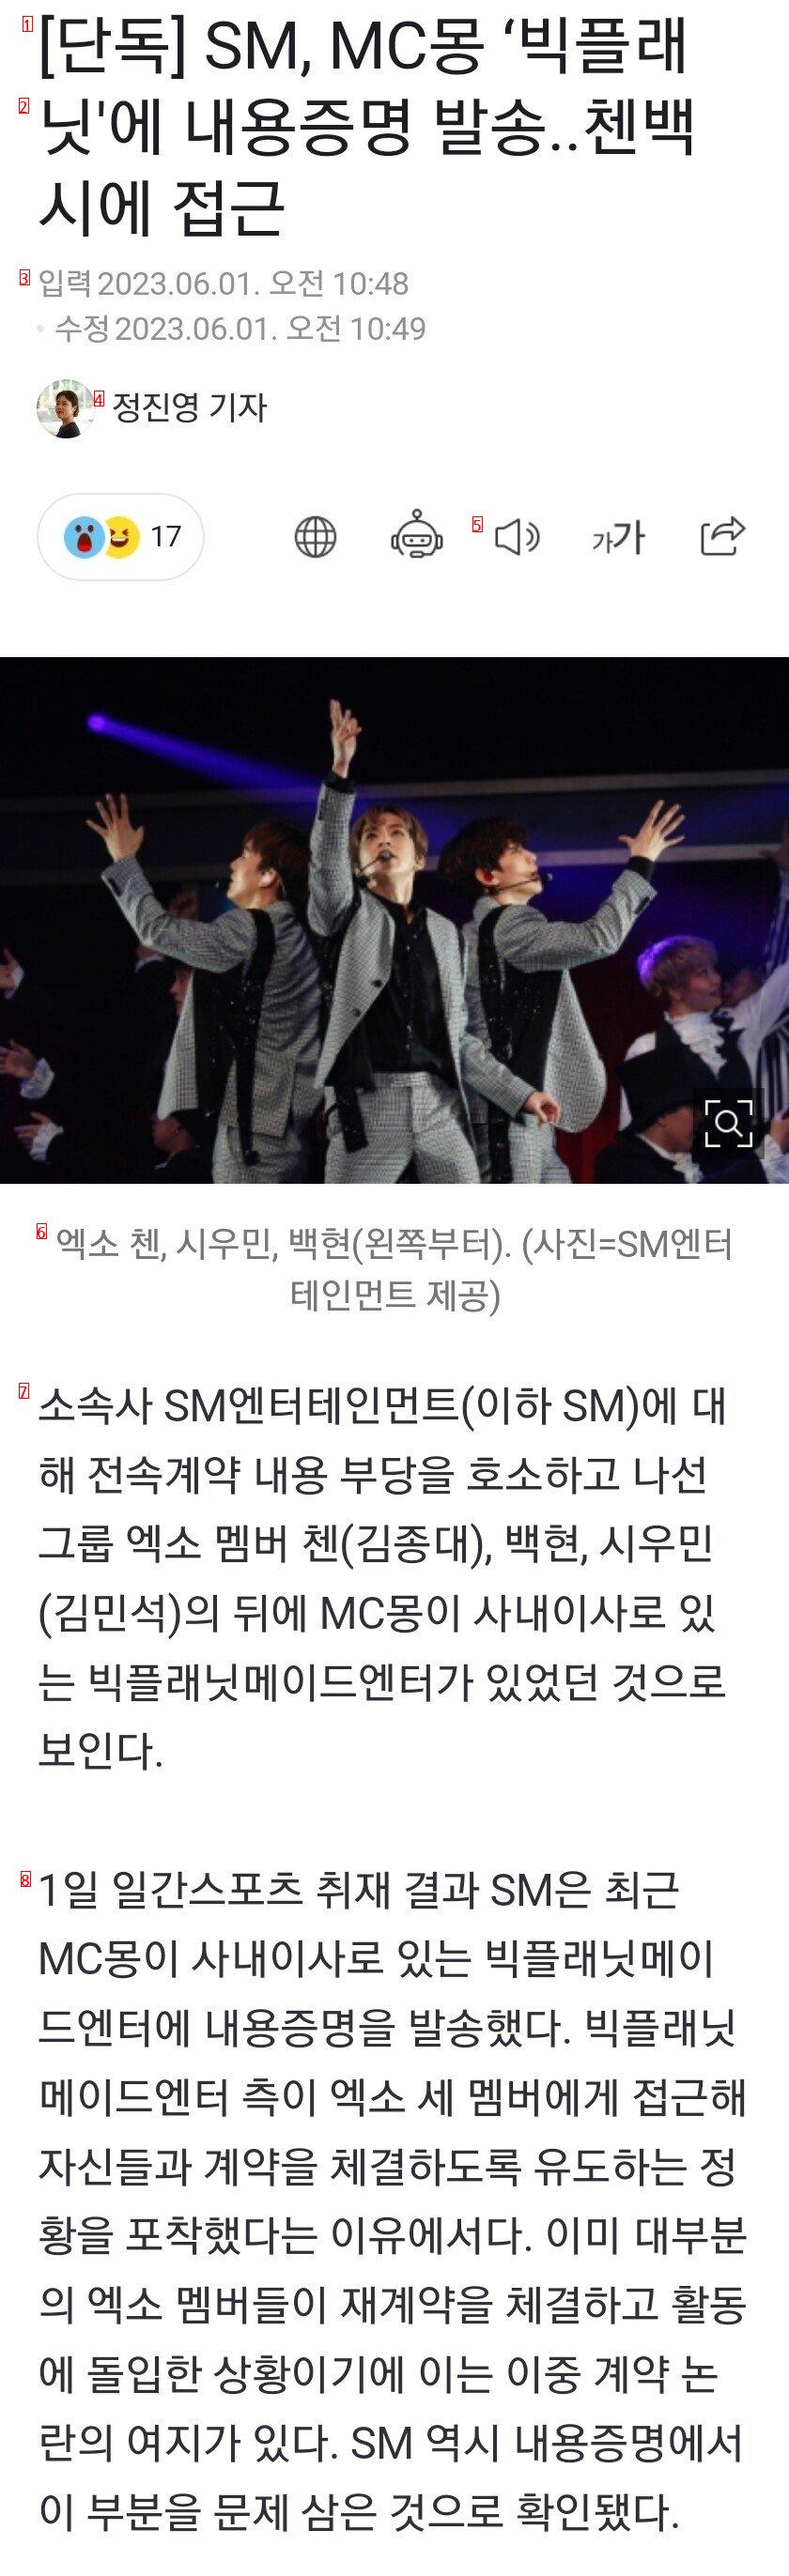 [단독] SM, MC몽 ‘빅플래닛''에 내용증명 발송..첸백시에 접근